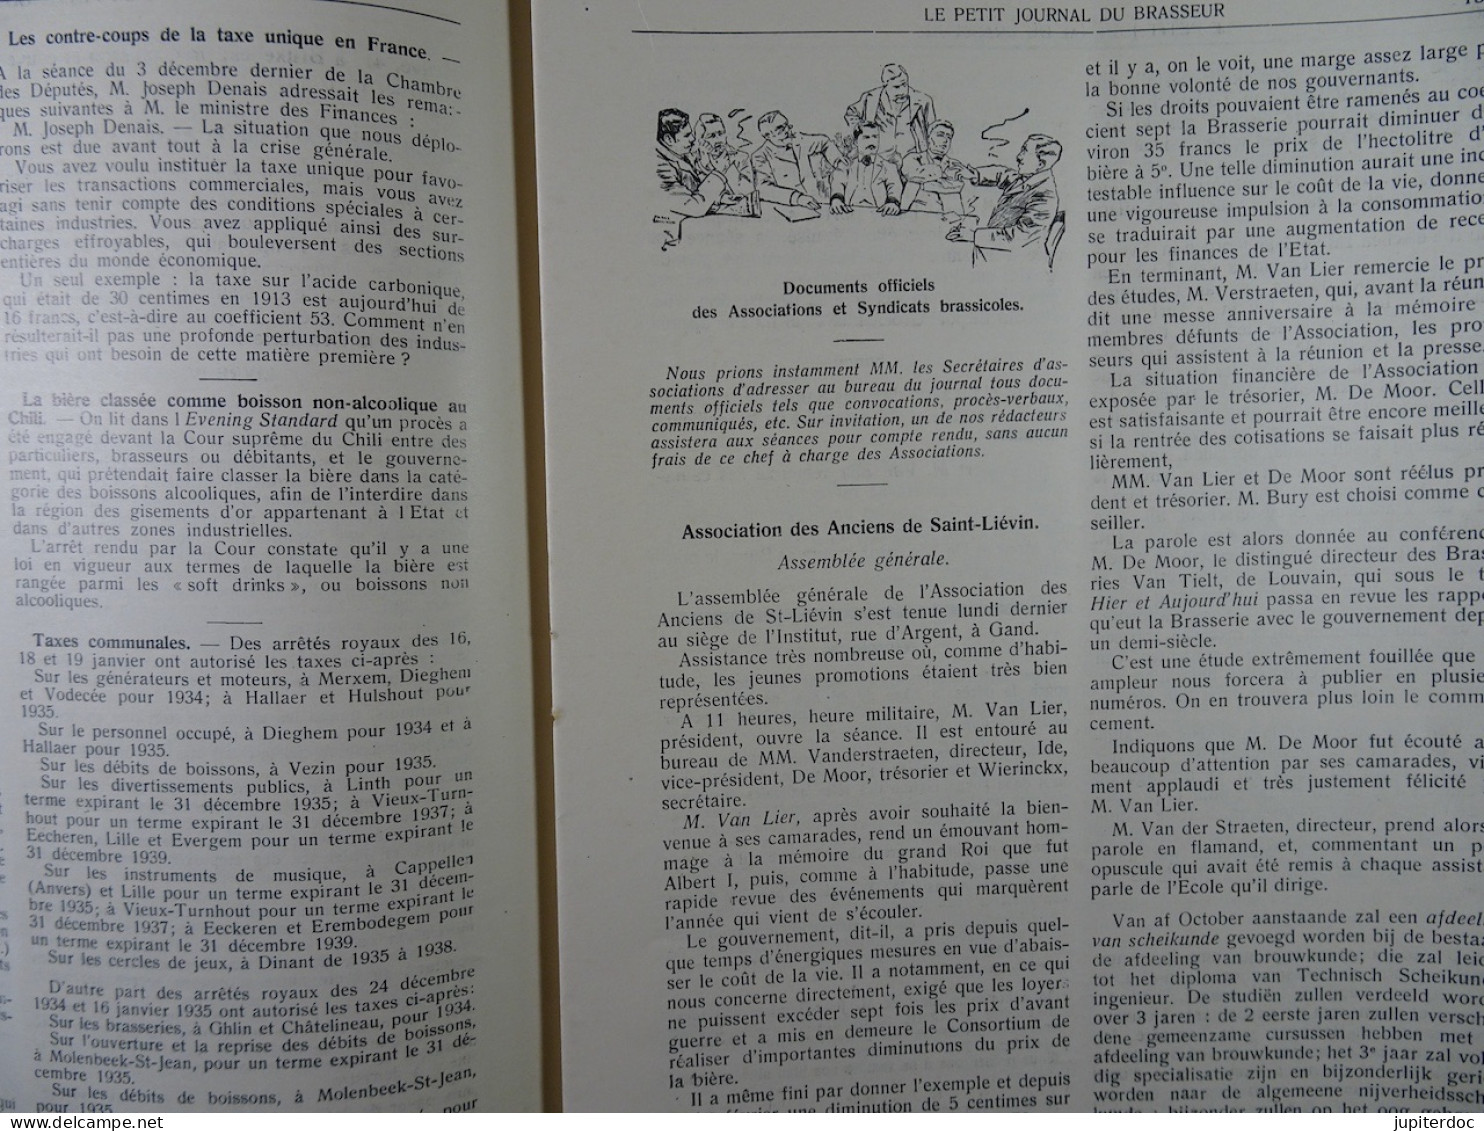 Le Petit Journal Du Brasseur N° 1811 De1935 Pages 130 à 156 Brasserie Belgique Bières Publicité Matériel Brouwerij - 1900 - 1949